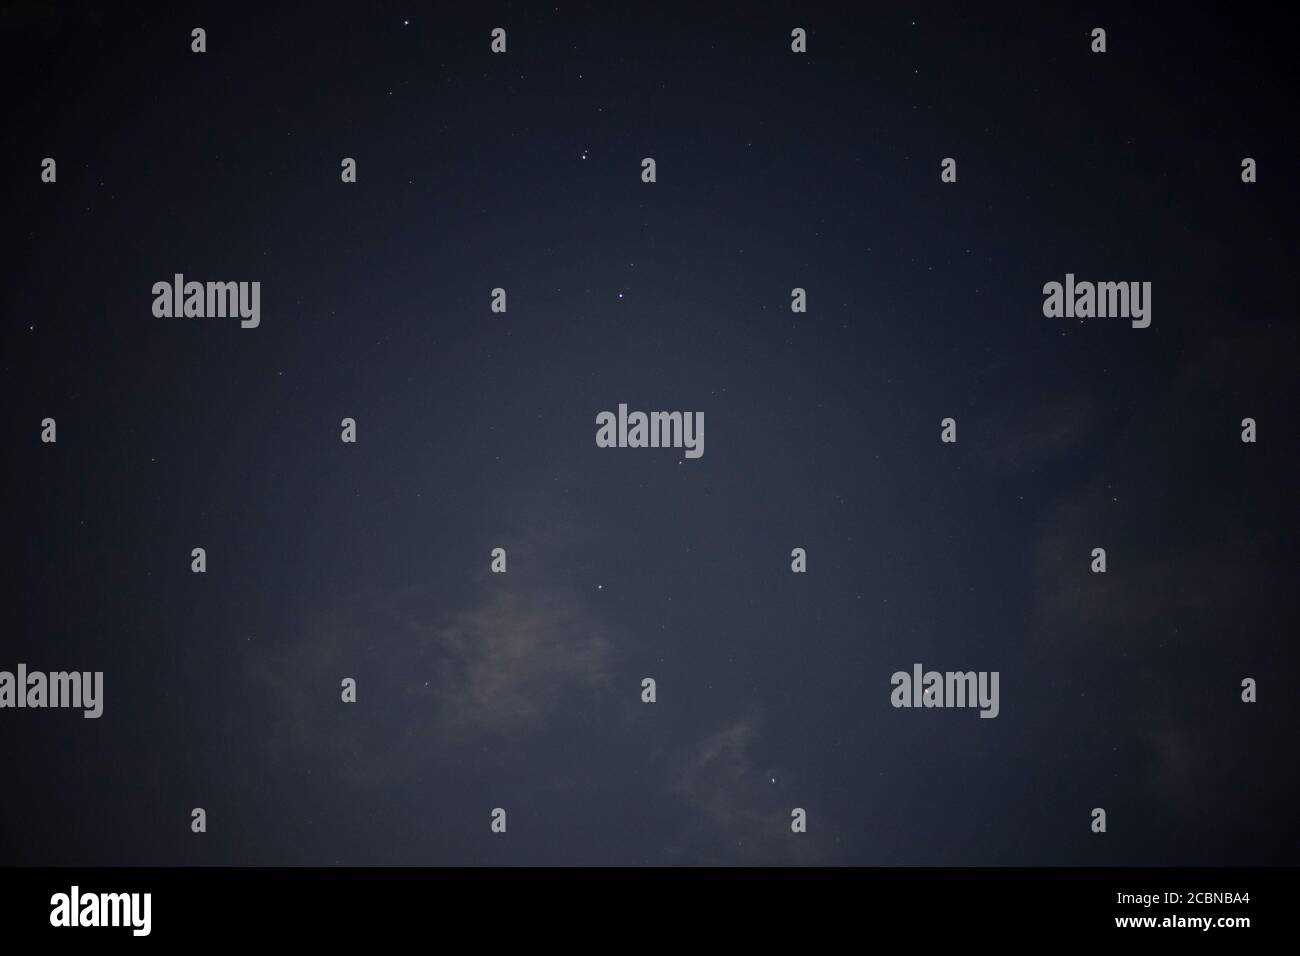 Fondo de pantalla de estrellas fotografías e imágenes de alta resolución -  Alamy